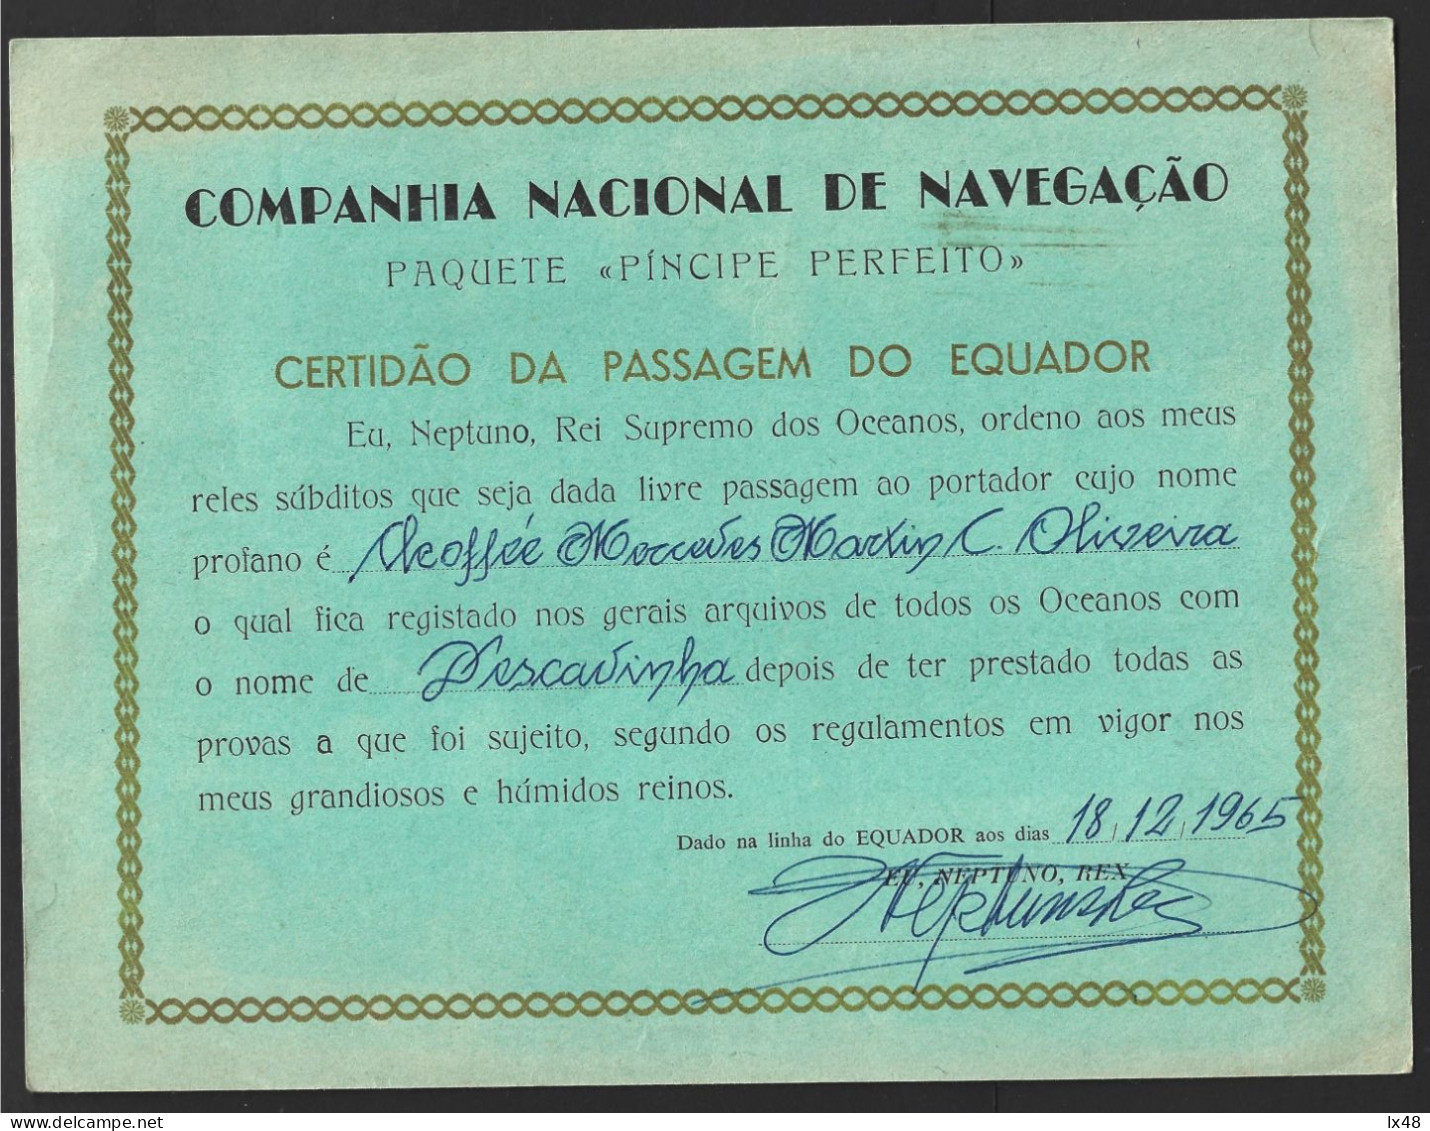 Ship 'Perfect Prince' Of CNN Companhia Nacional Navegação, Portugal. Certificate Of Crossing The 'Equator' Line In 1965. - Transportmiddelen